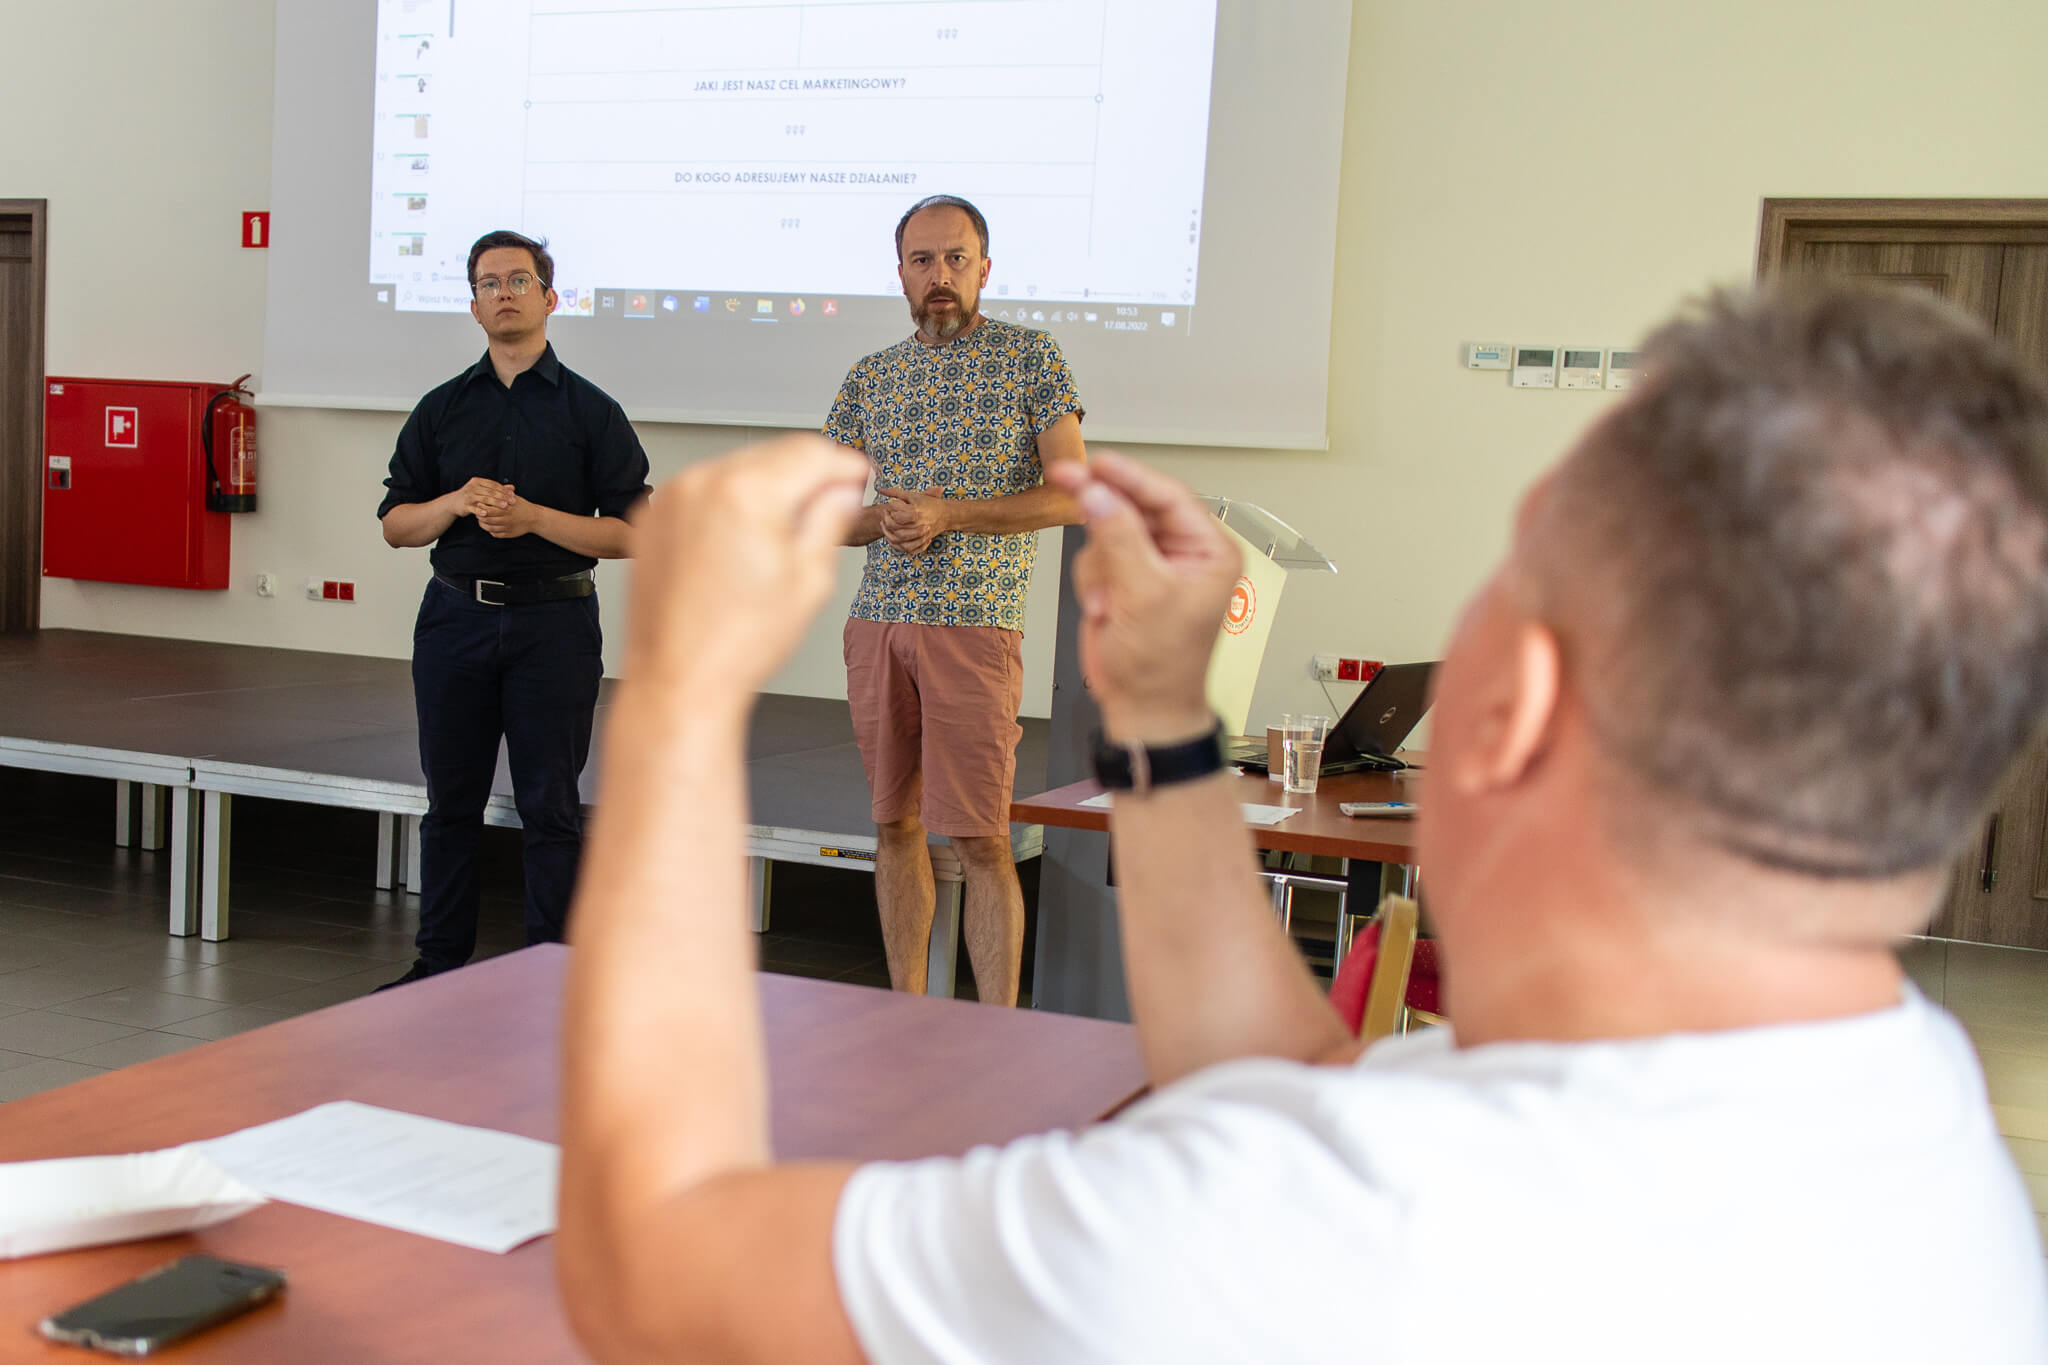 Głuchy mężczyzna rozmawia z osobą prowadzącą szkolenie, obok niego stoi tłumacz języka migowego